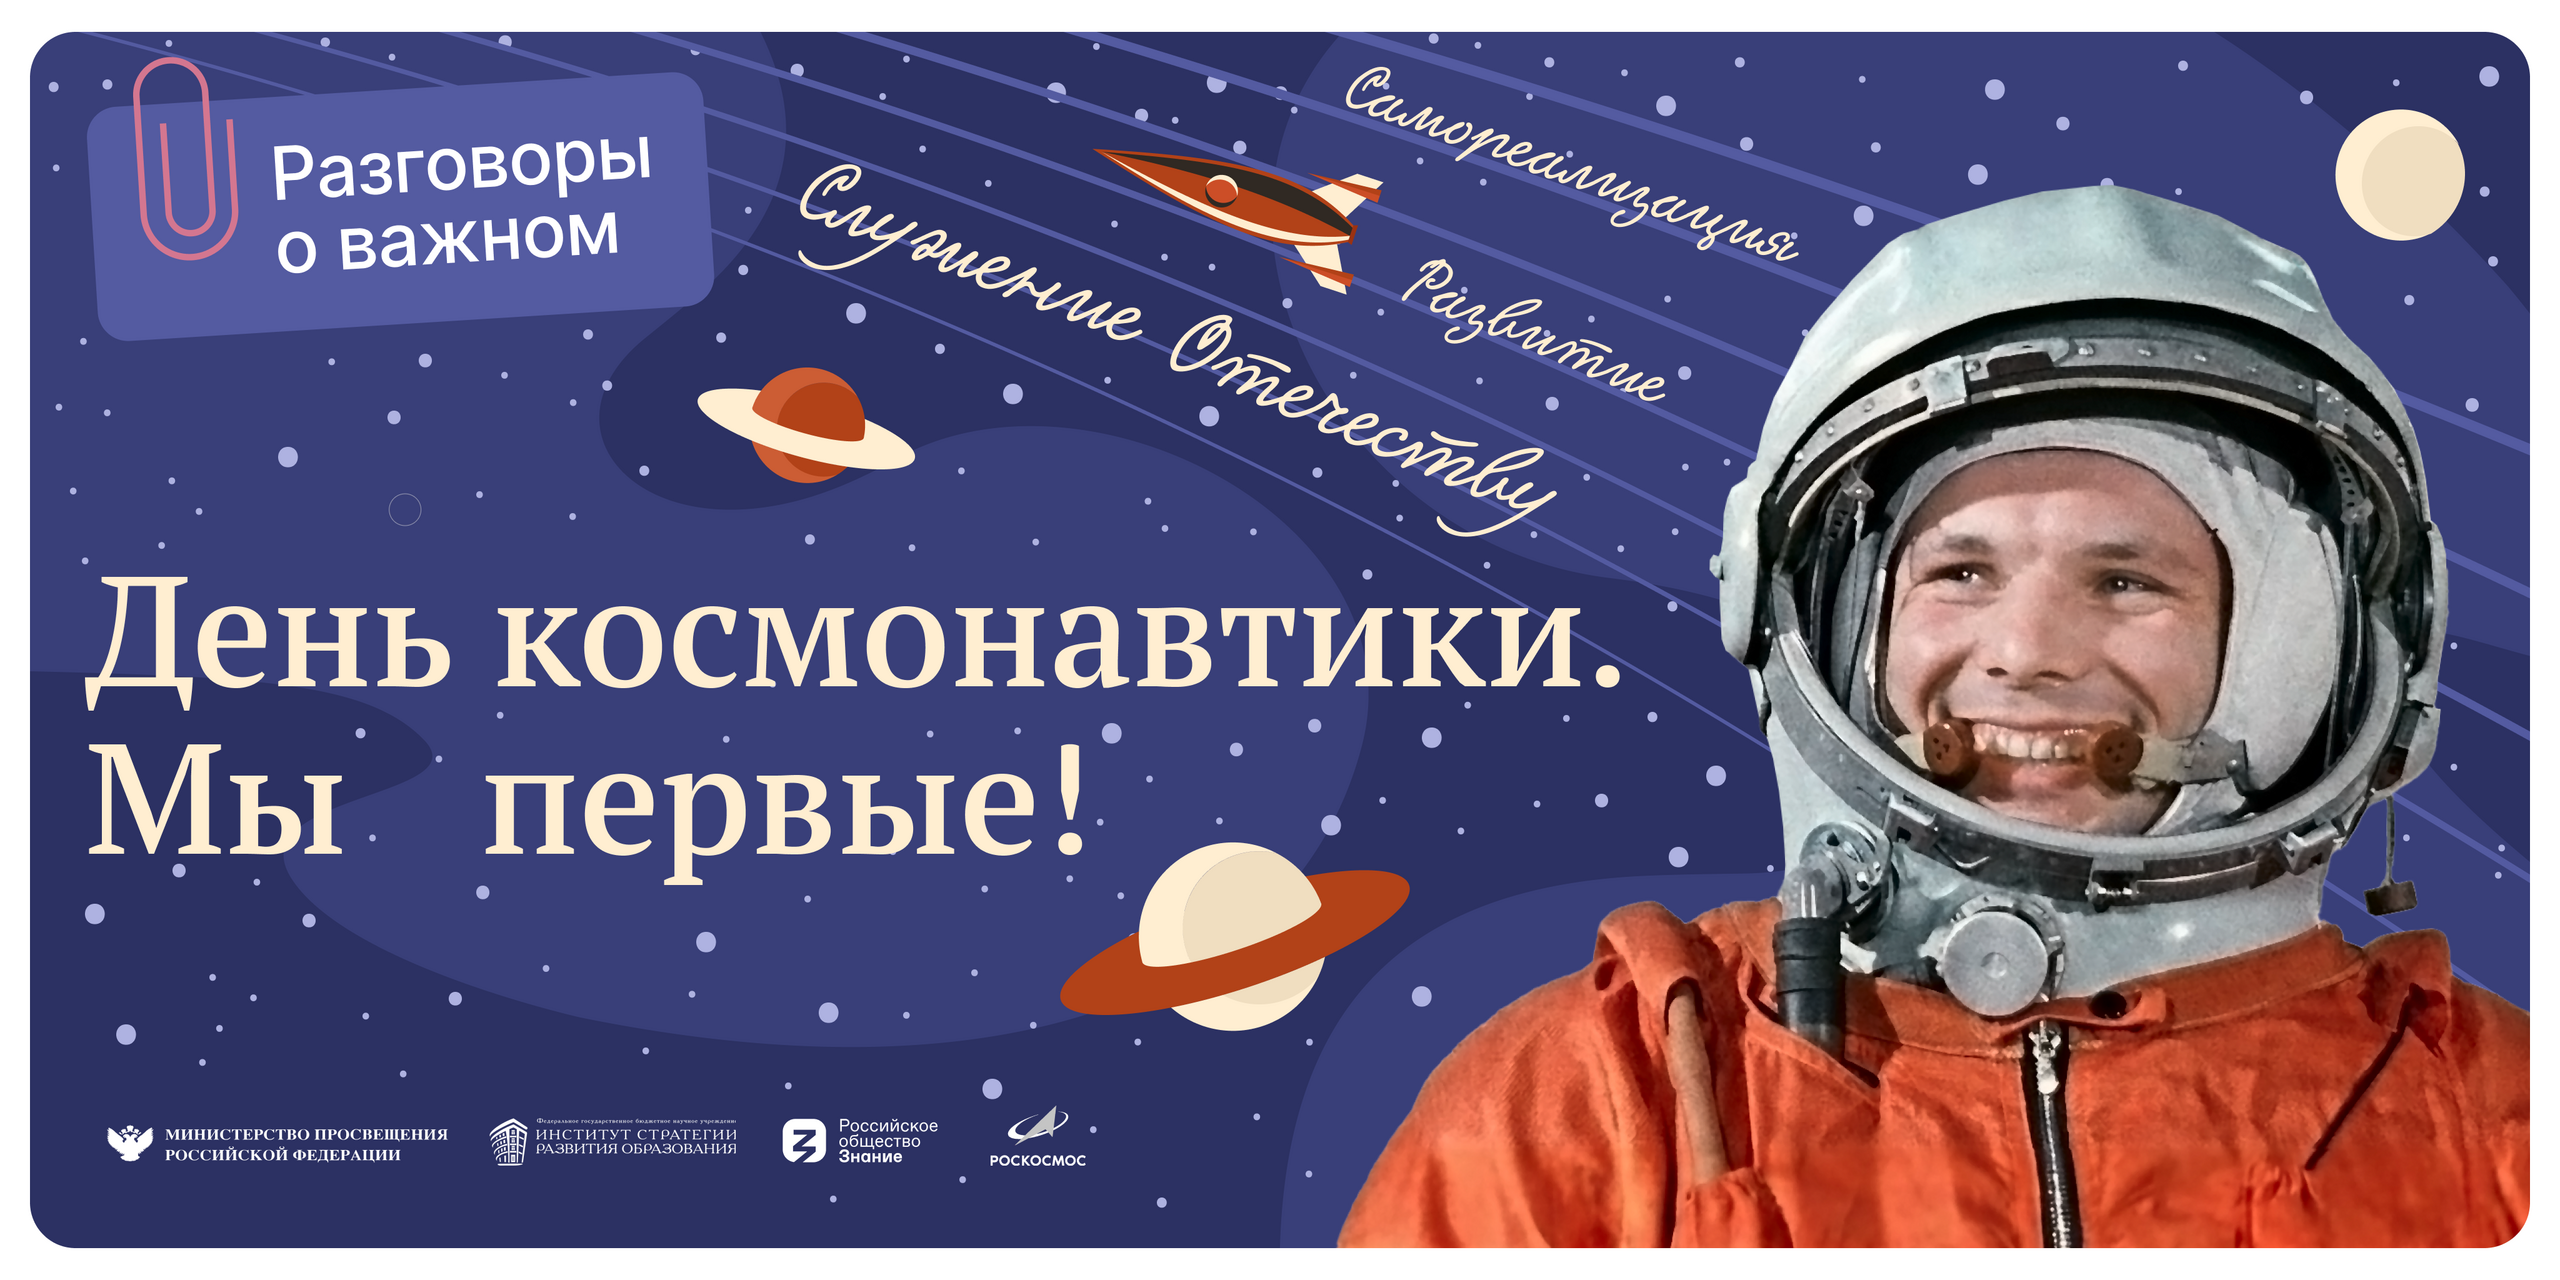 Почему важен праздник день космонавтики для россиян. День космонавтики. Праздник день космонавтики. Плакат "день космонавтики". День космонавтики Плакаи.